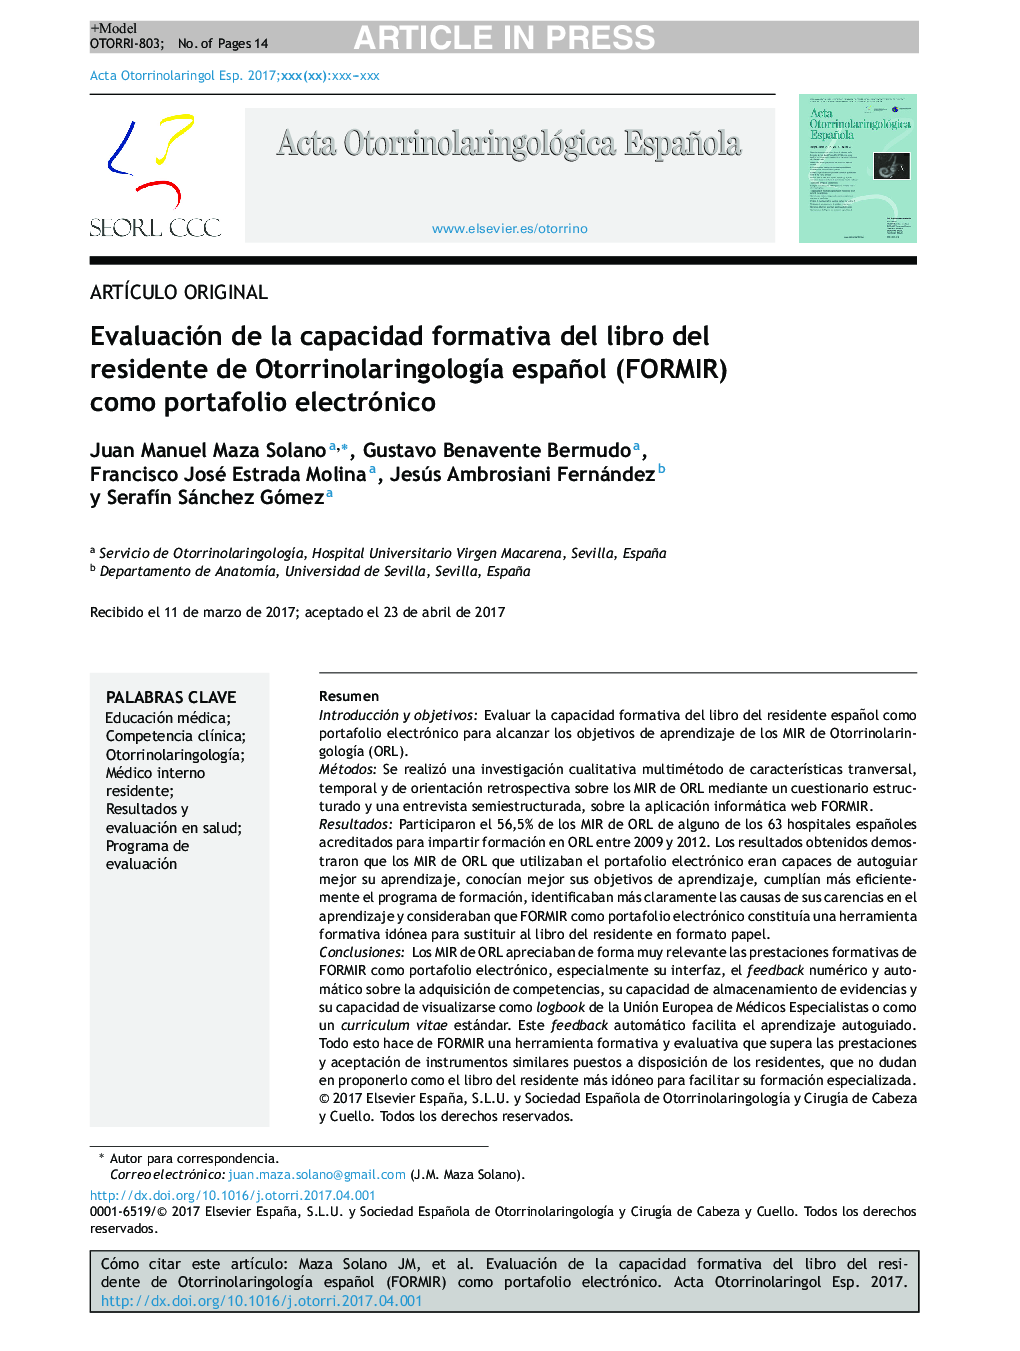 Evaluación de la capacidad formativa del libro del residente de OtorrinolaringologÃ­a español (FORMIR) como portafolio electrónico